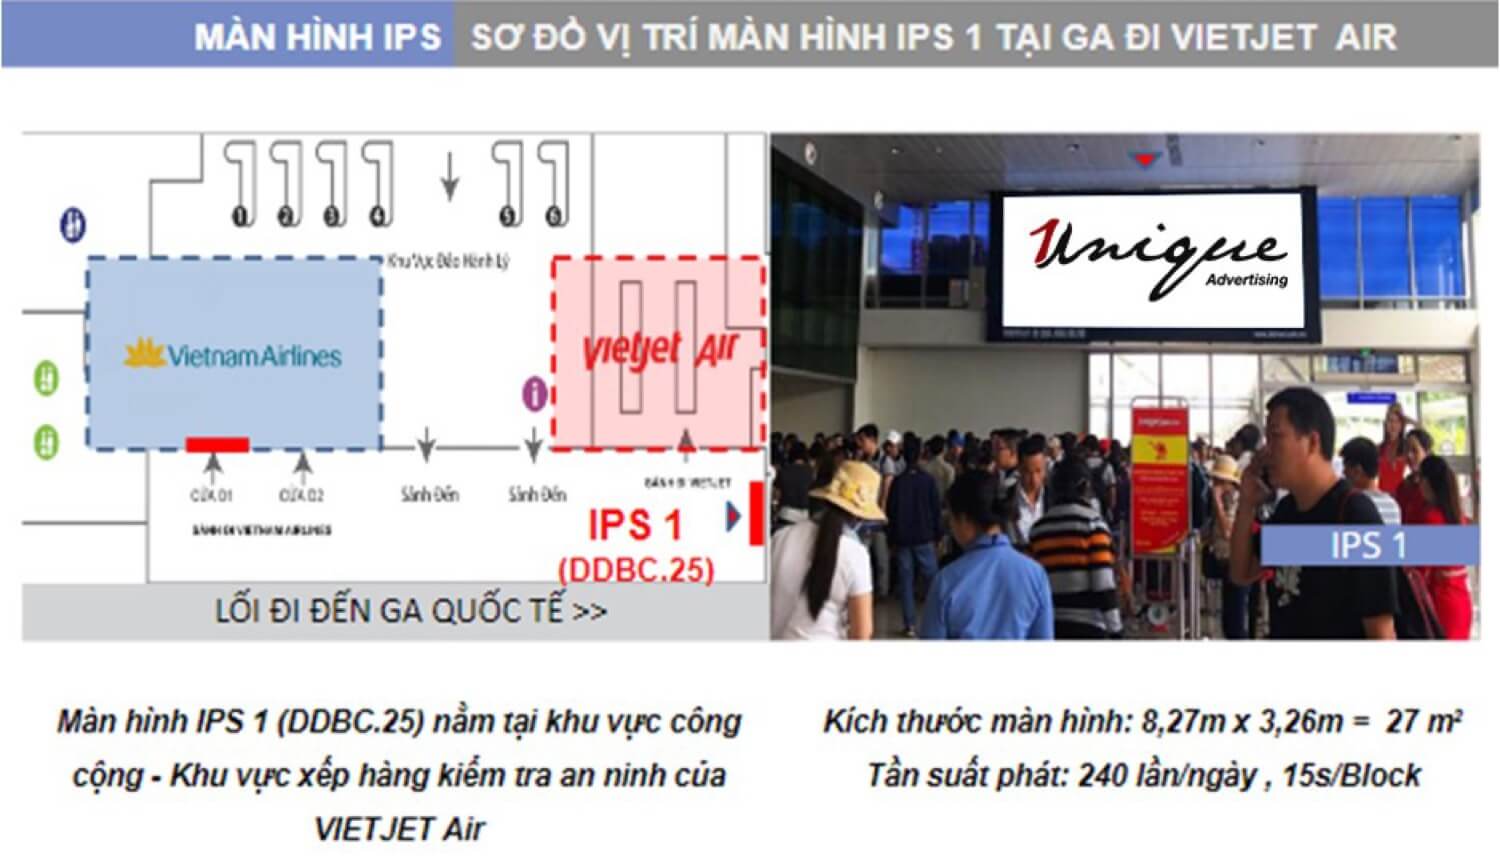 quảng cáo màn hình Led, Lcd, Frame tại sân bay Tân Sơn Nhất